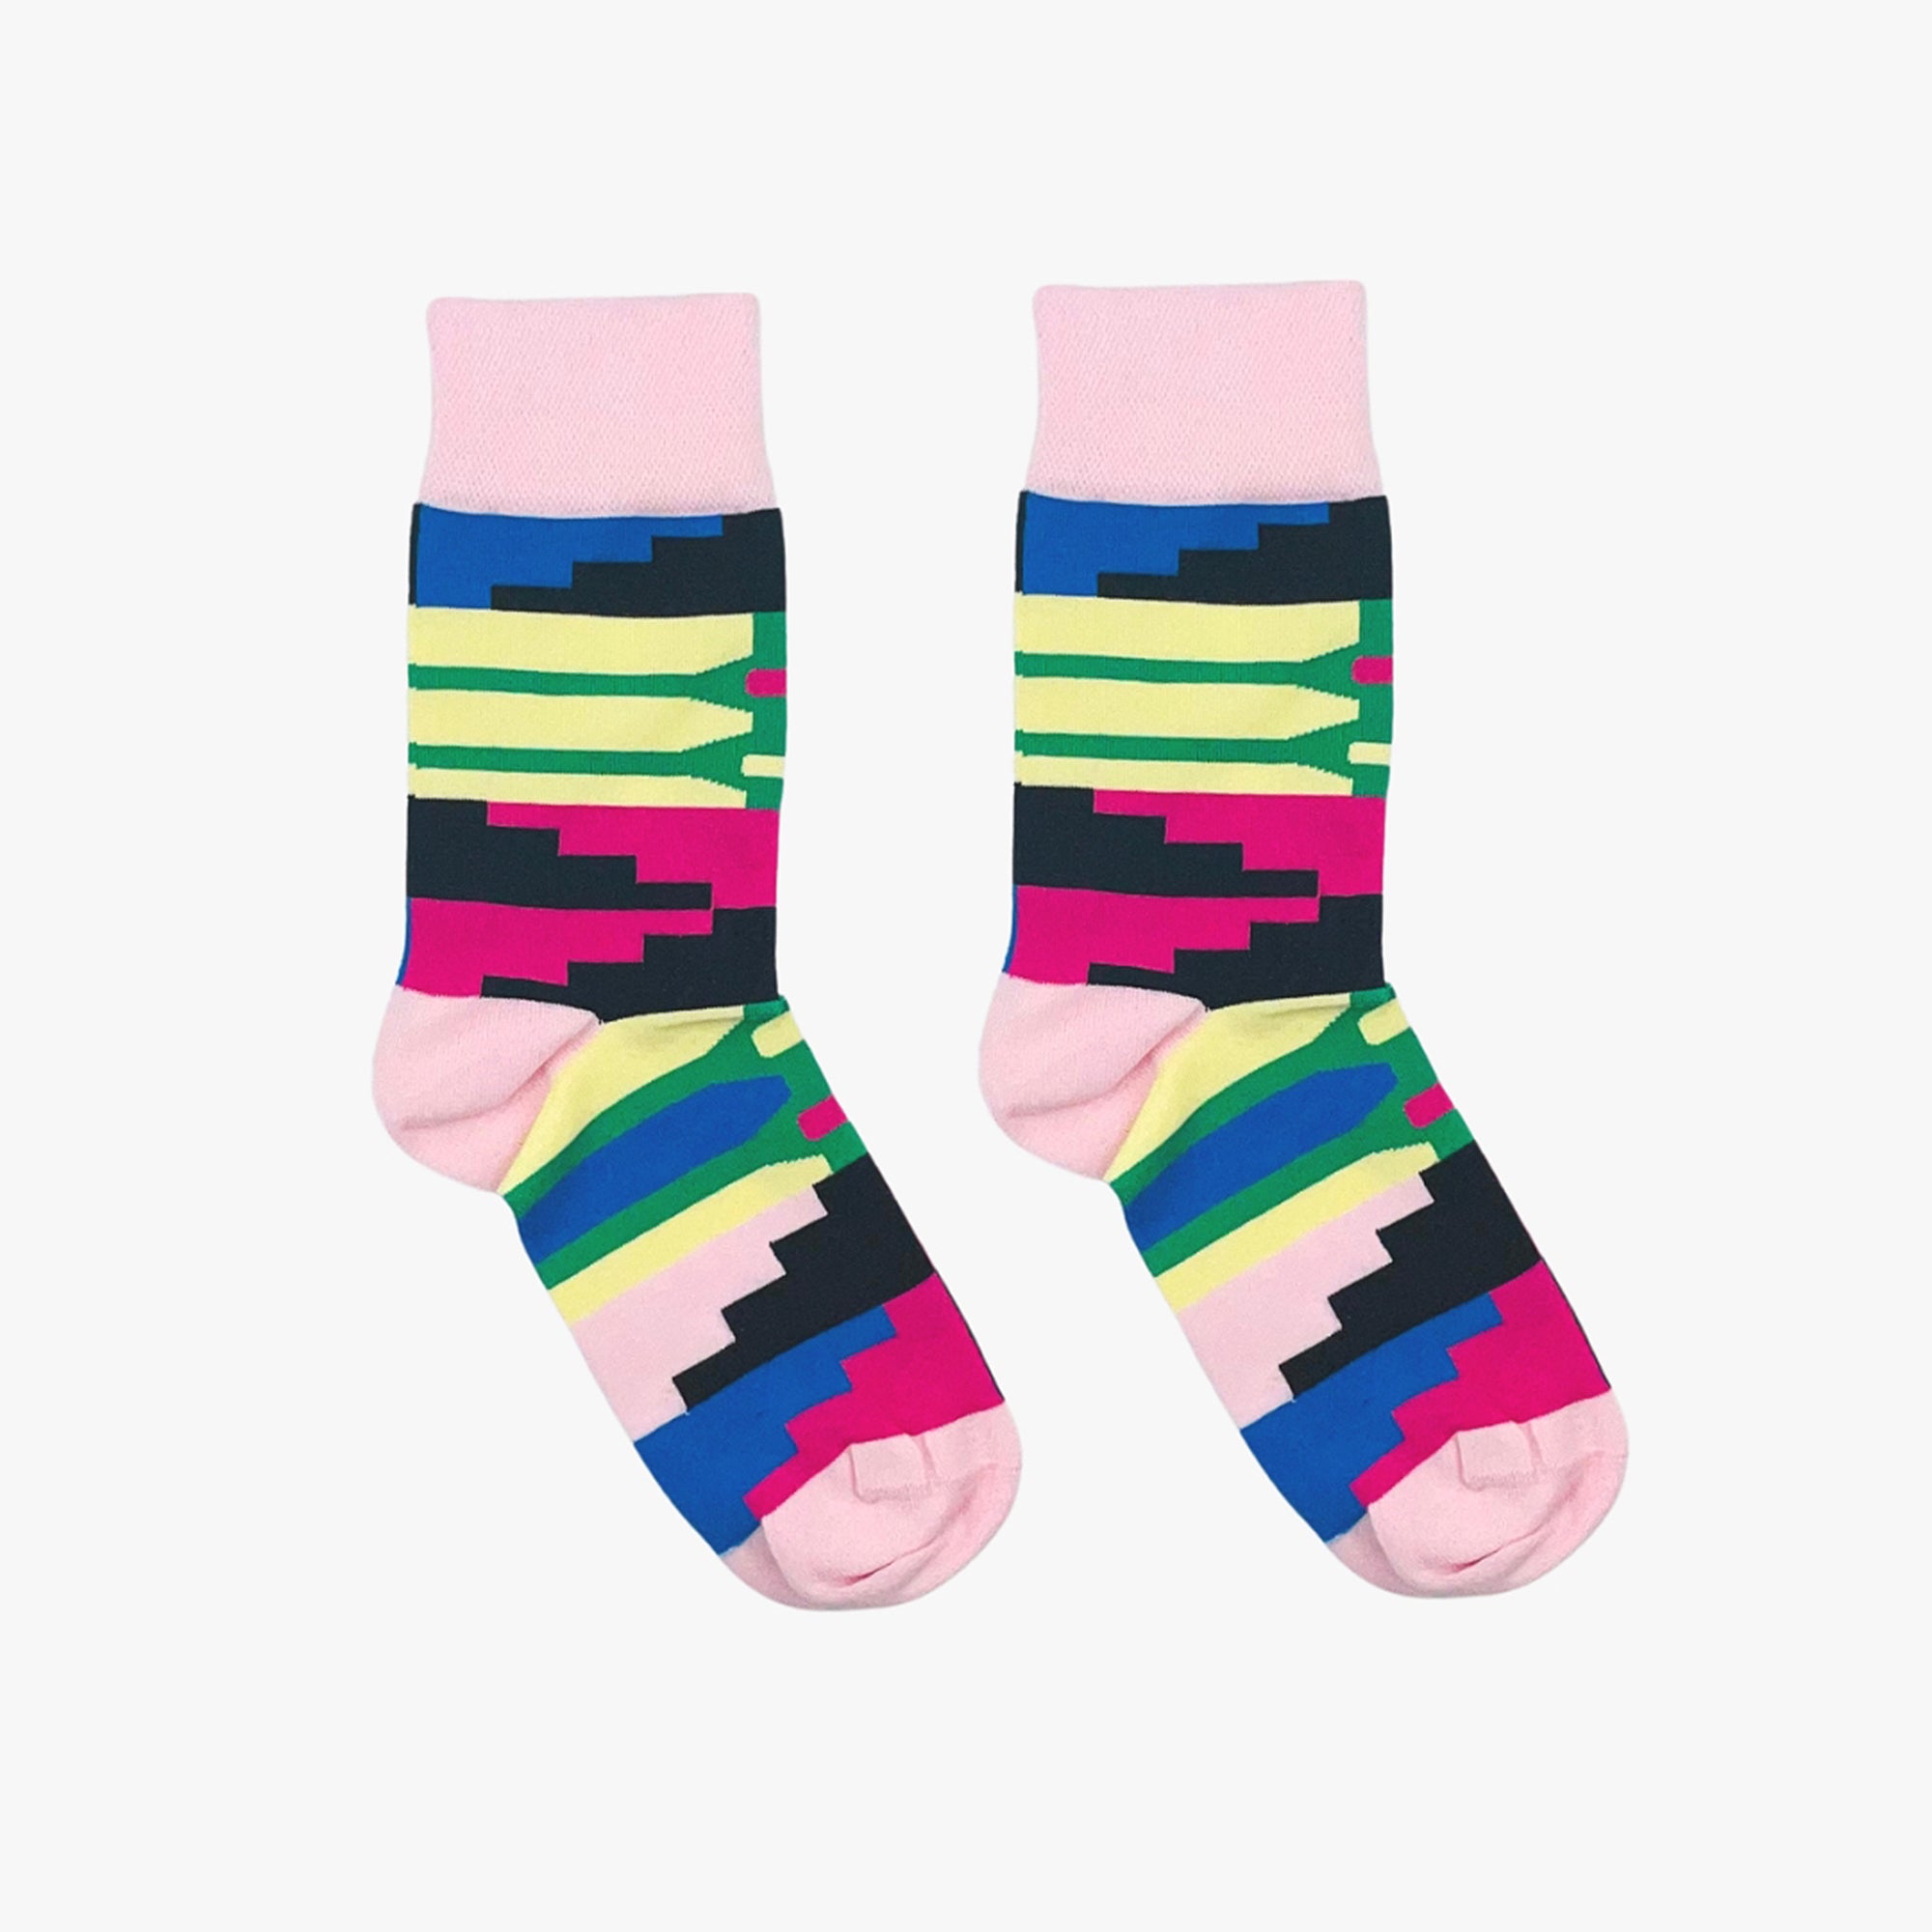 Kente pink socks